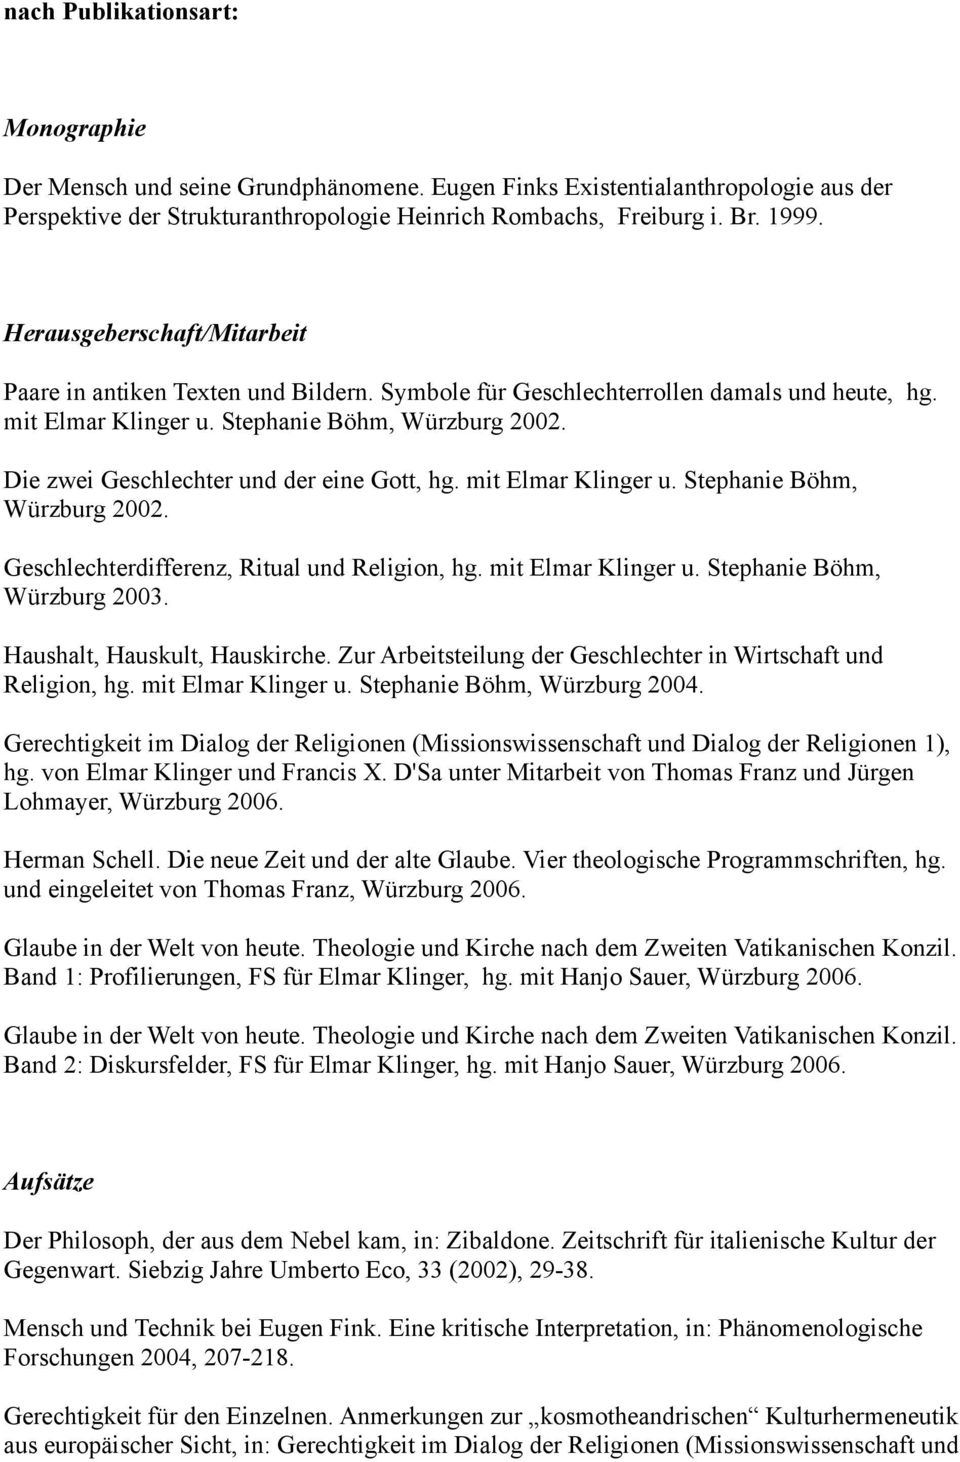 Die zwei Geschlechter und der eine Gott, hg. mit Elmar Klinger u. Stephanie Böhm, Würzburg 2002. Geschlechterdifferenz, Ritual und Religion, hg. mit Elmar Klinger u. Stephanie Böhm, Würzburg 2003.